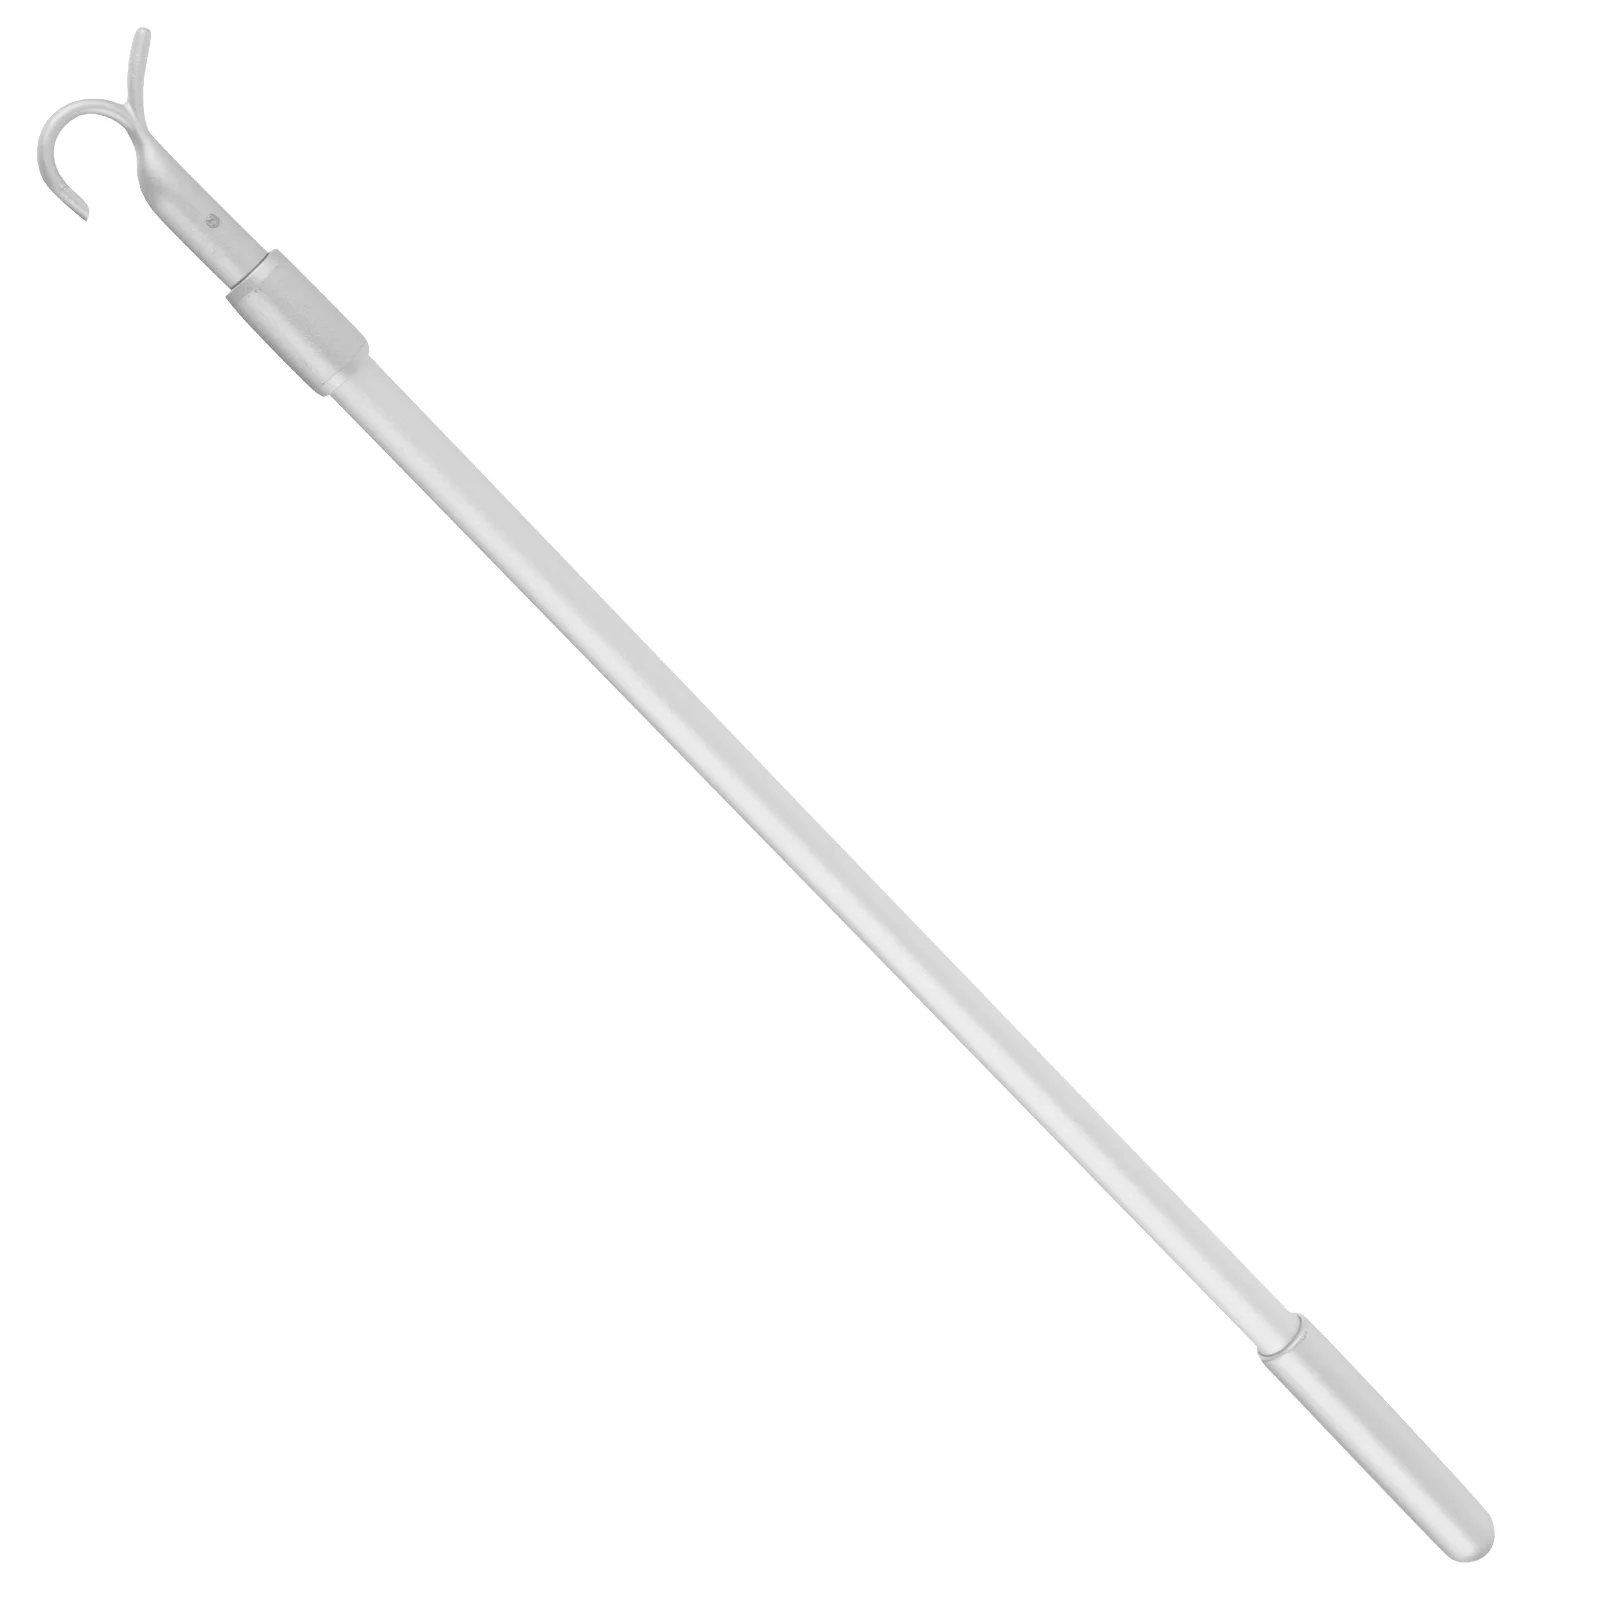 

Hanger Retriever Pole Hook Adjustable 24Inch High Reach Closet Pole Aluminium Alloy Extendable Garment Hook Reaching Stick